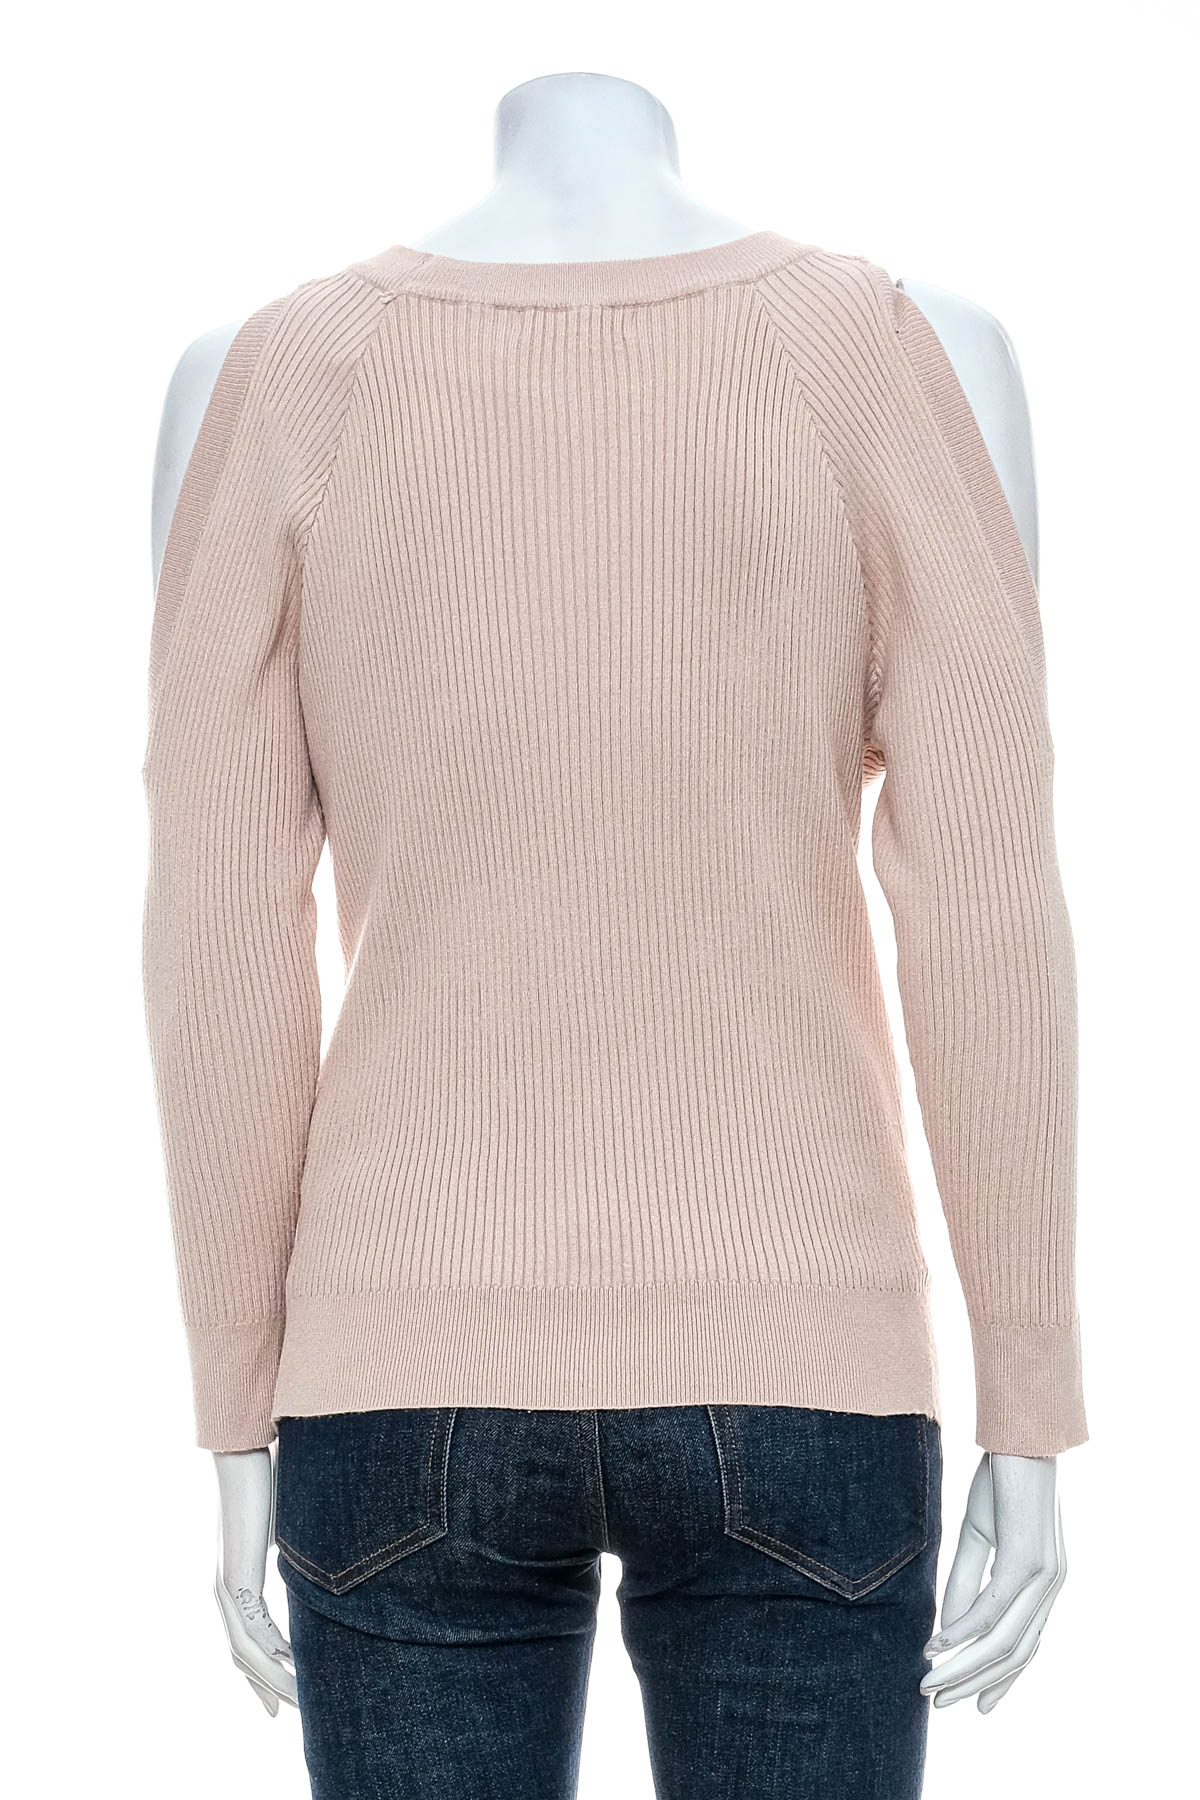 Women's sweater - JS MILLENIUM - 1